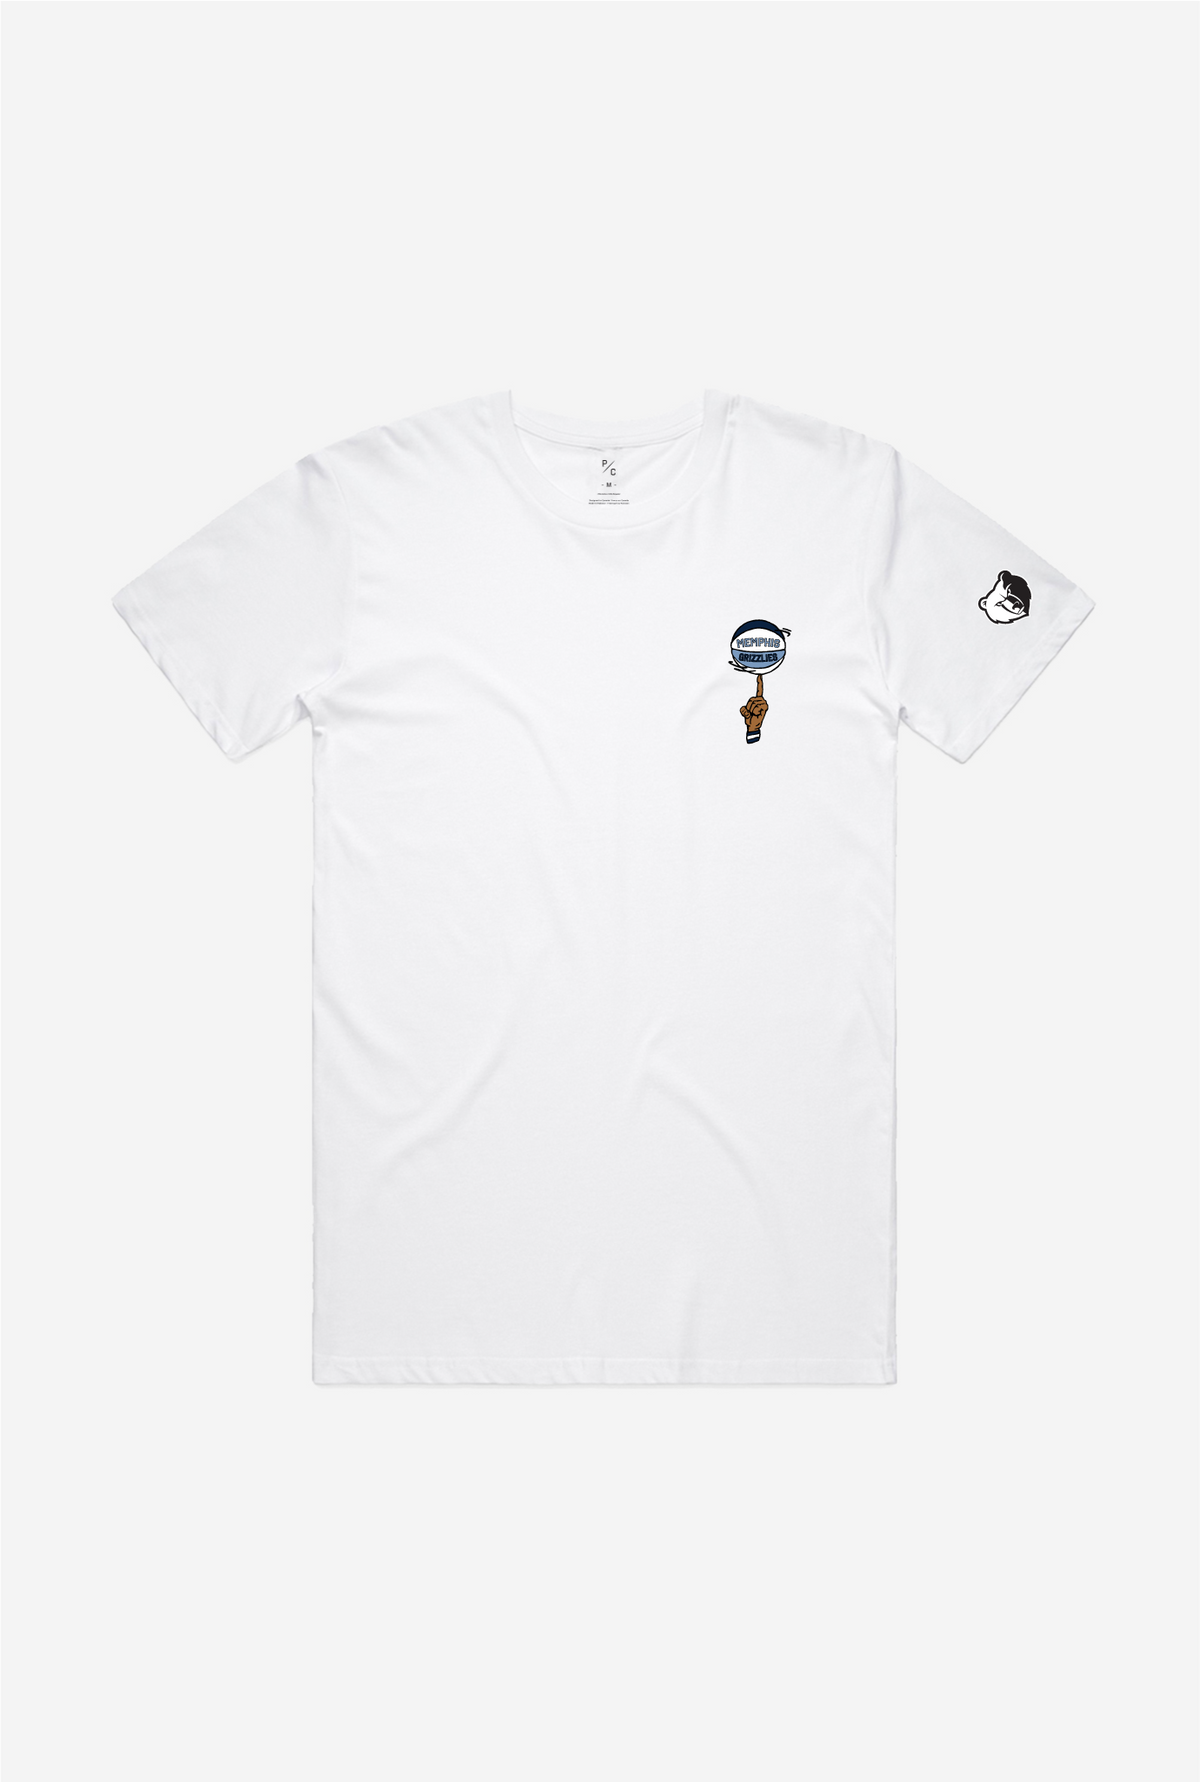 Memphis Grizzlies Spinning Ball T-Shirt - White